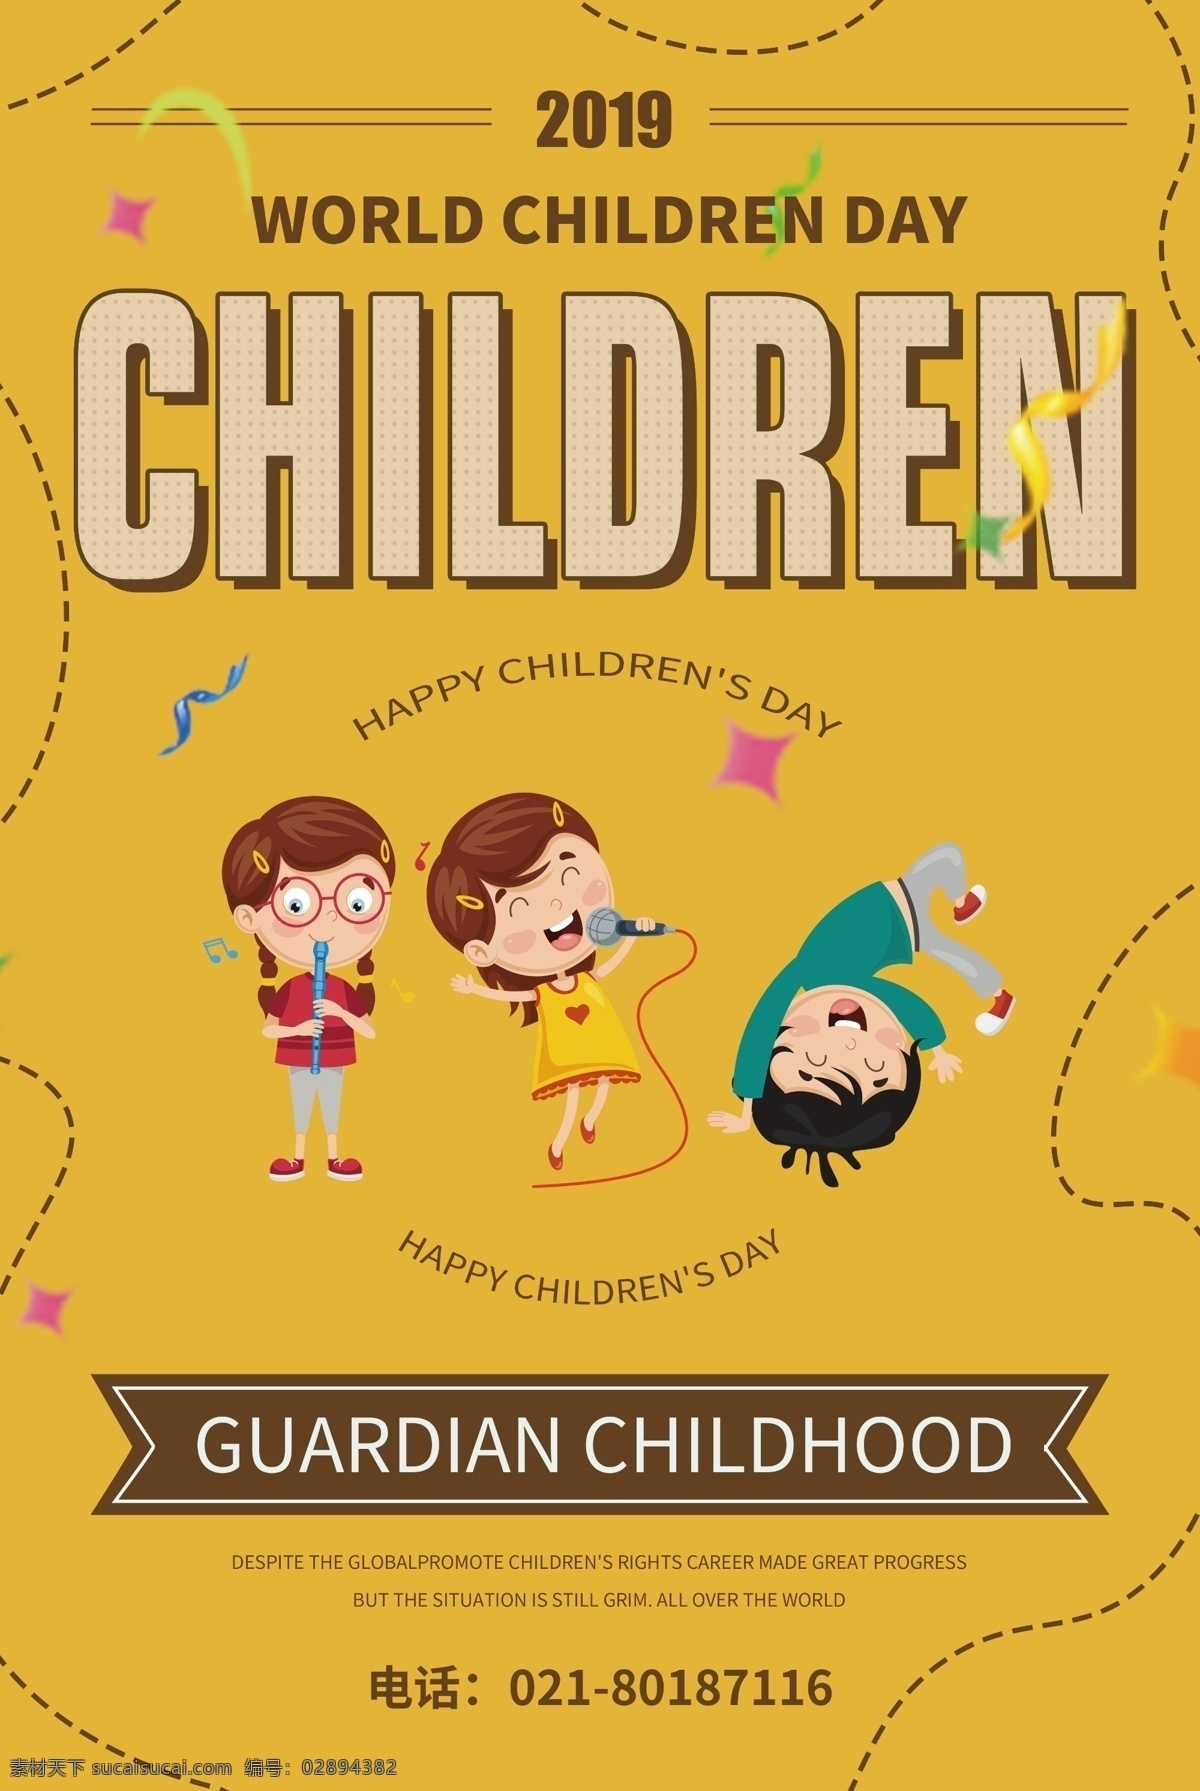 国际 儿童 日 英文 海报 国际儿童日 儿童日 快乐 孩子 纯英文海报 英文海报 简约